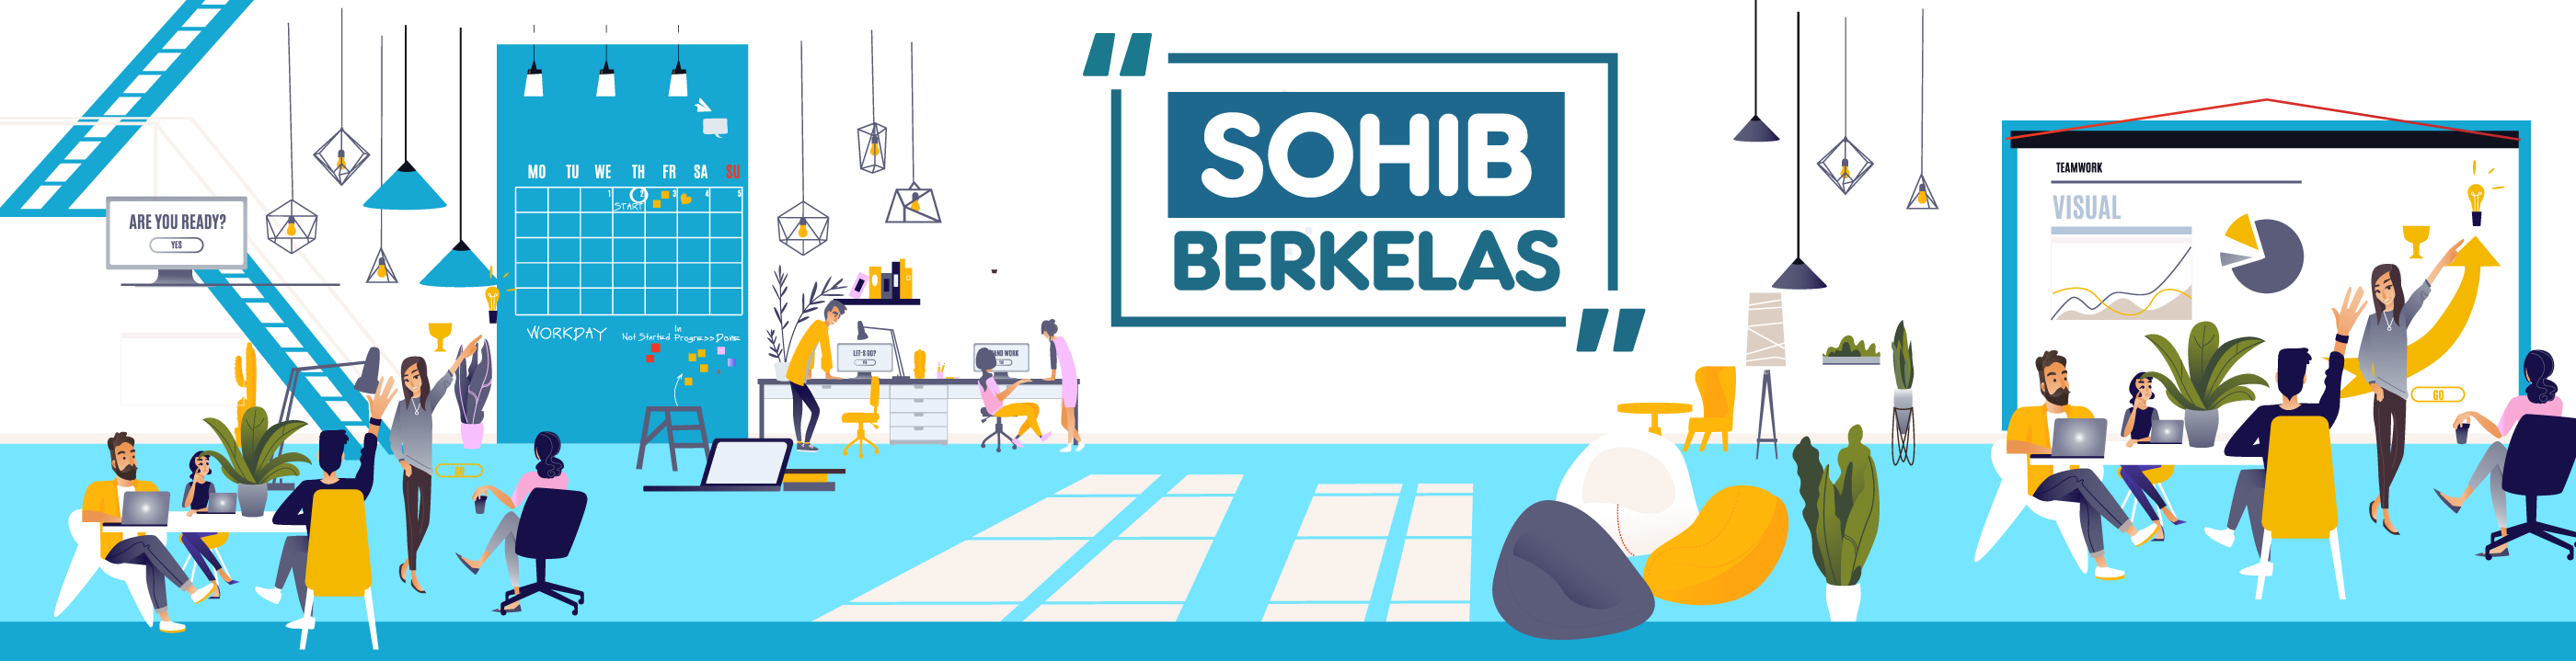 SohIB Berkelas Medan 2018_banner_1535444059_sohib_offline.png